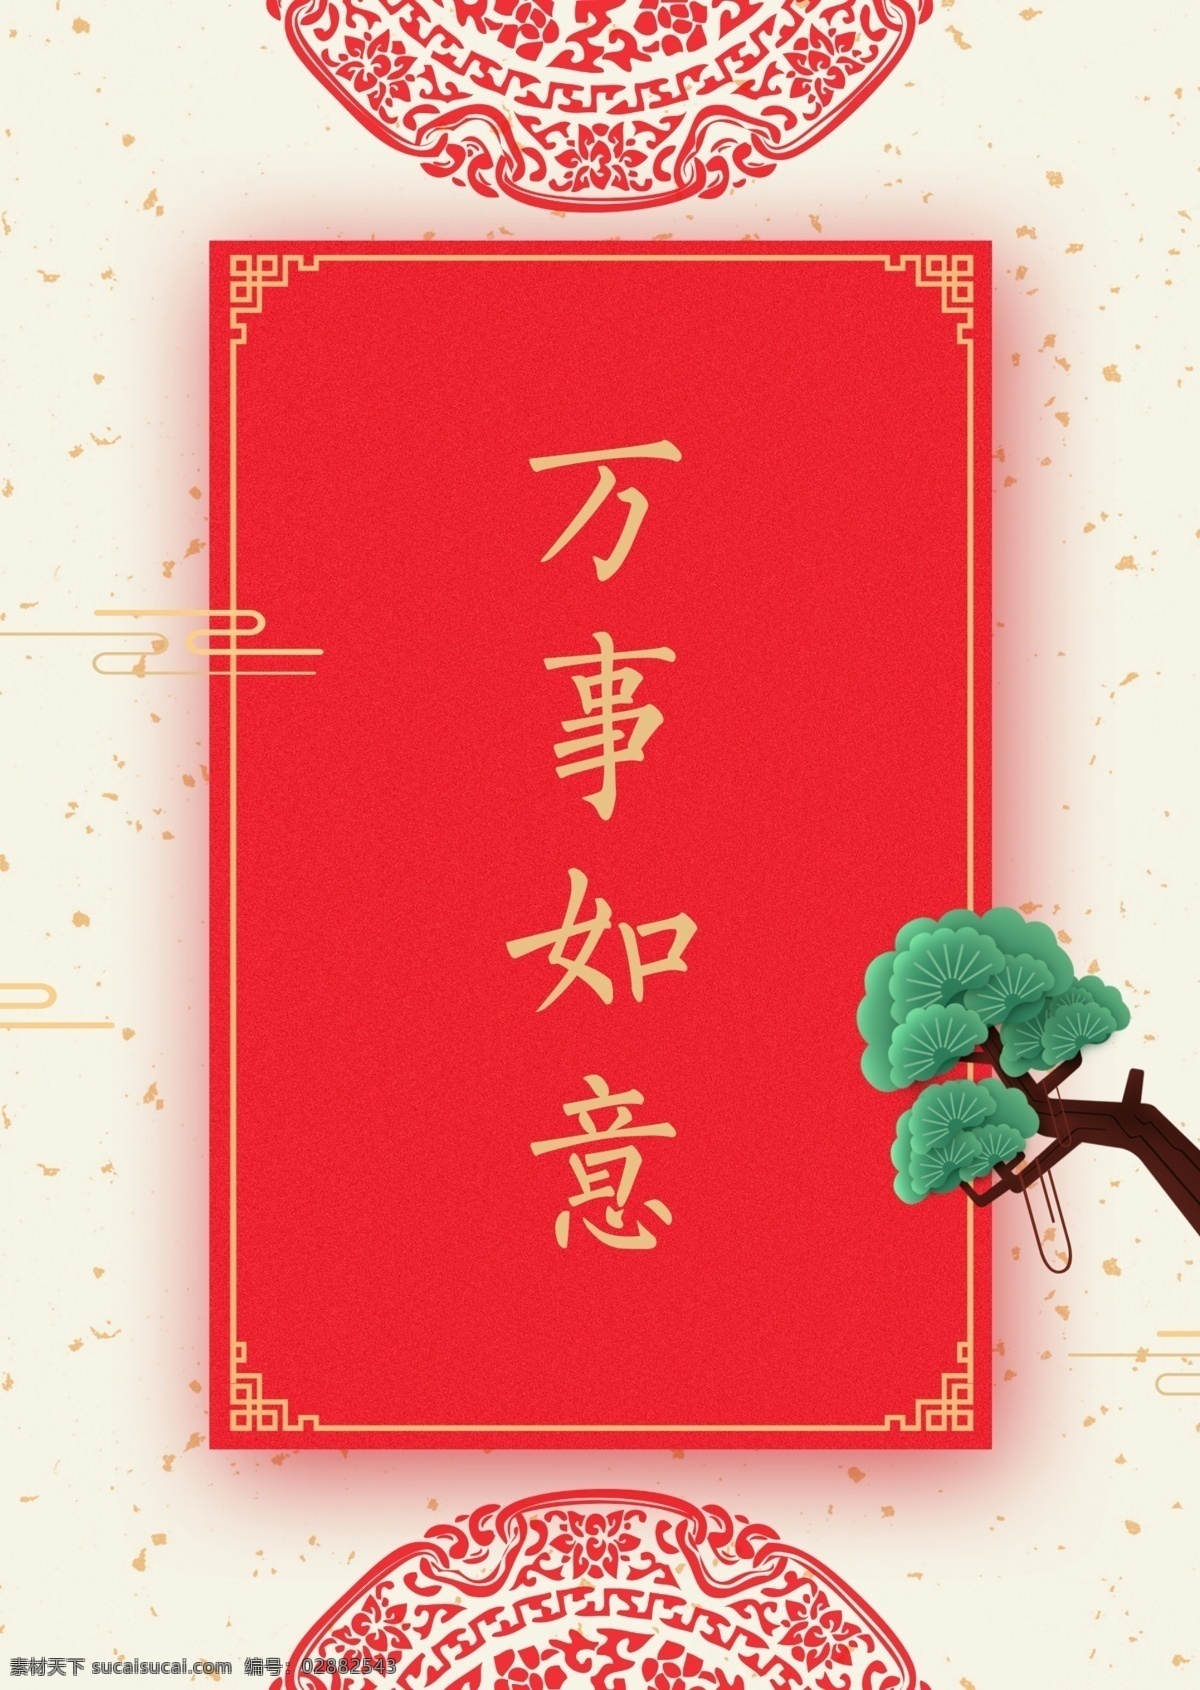 中国 风格 传统 新年 电池 海报 万事如意 上运 中国风格 创办 帧